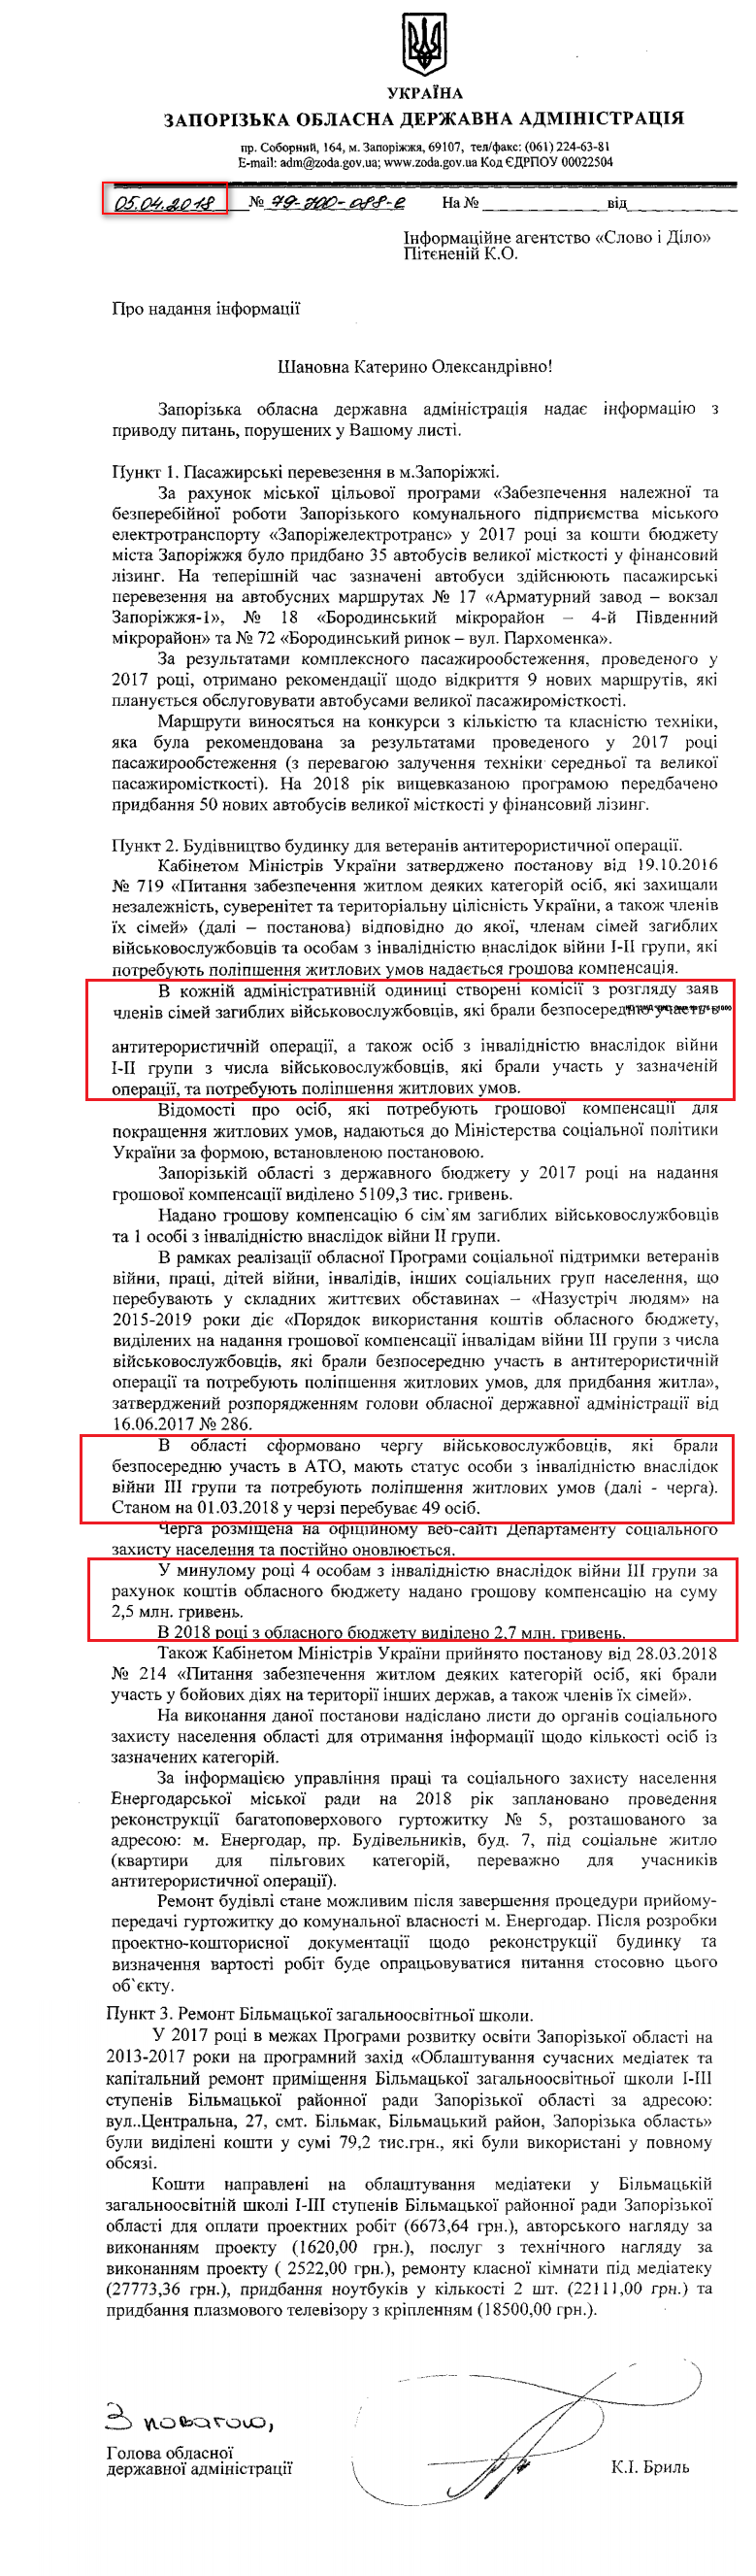 Лист Запорізької обласної державної адміністрації від 5